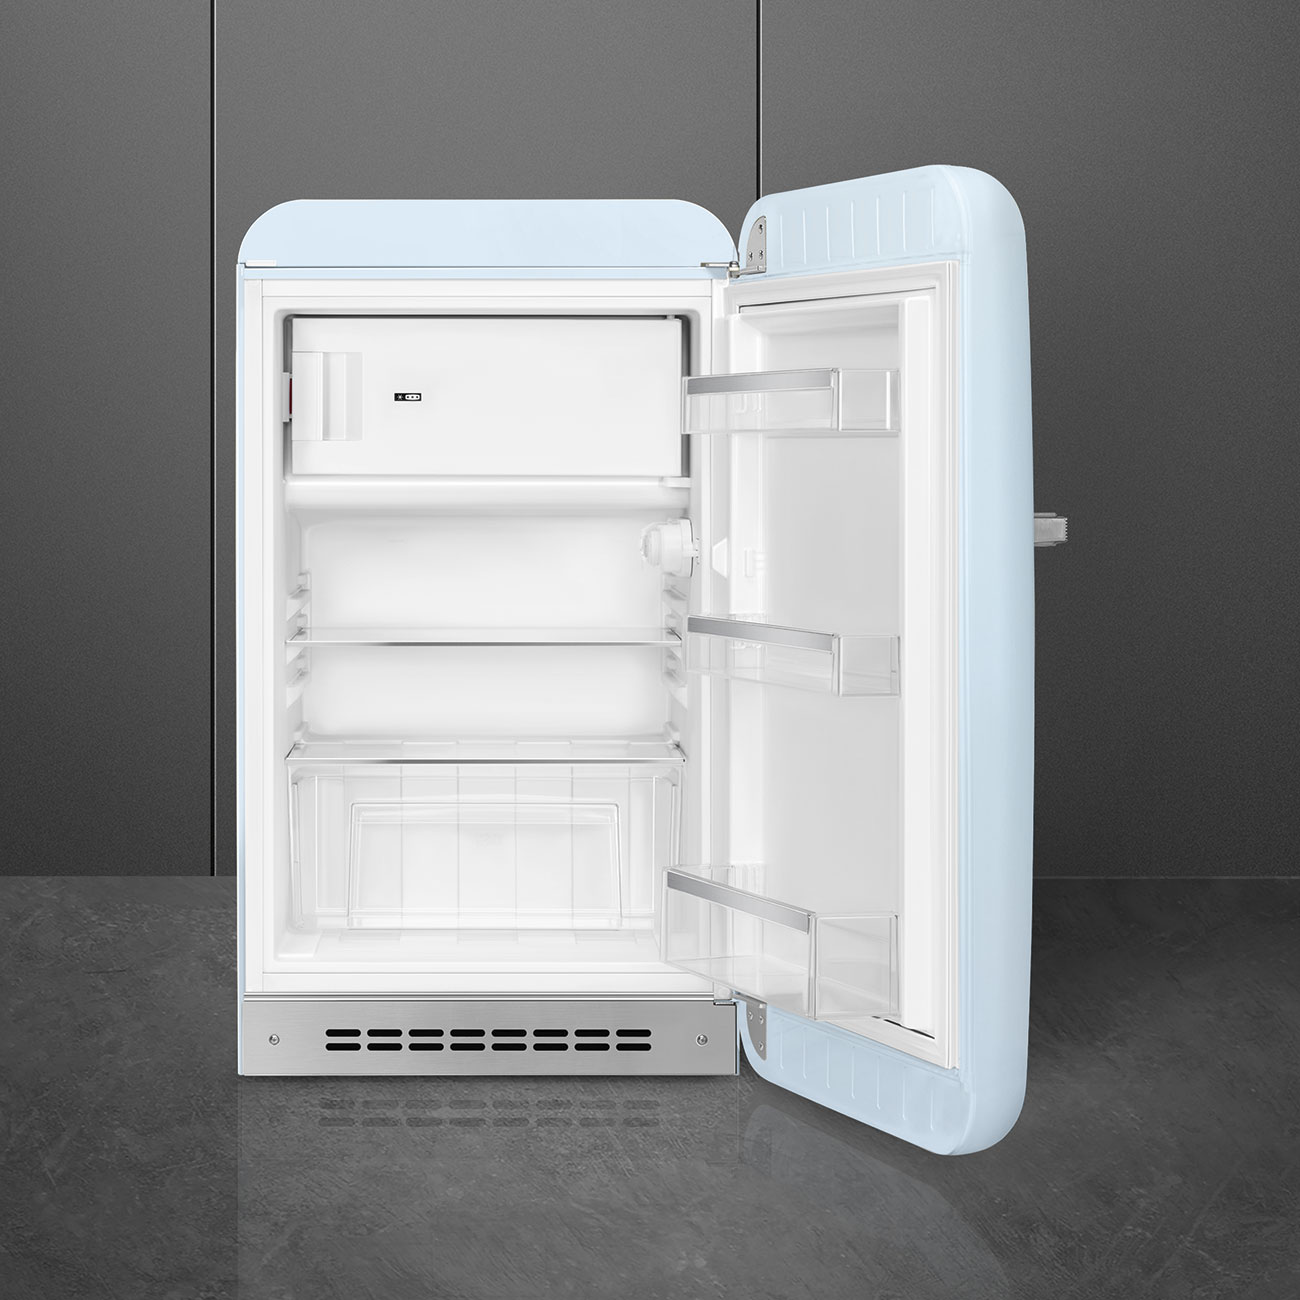 Pastel blue refrigerator - Smeg_2